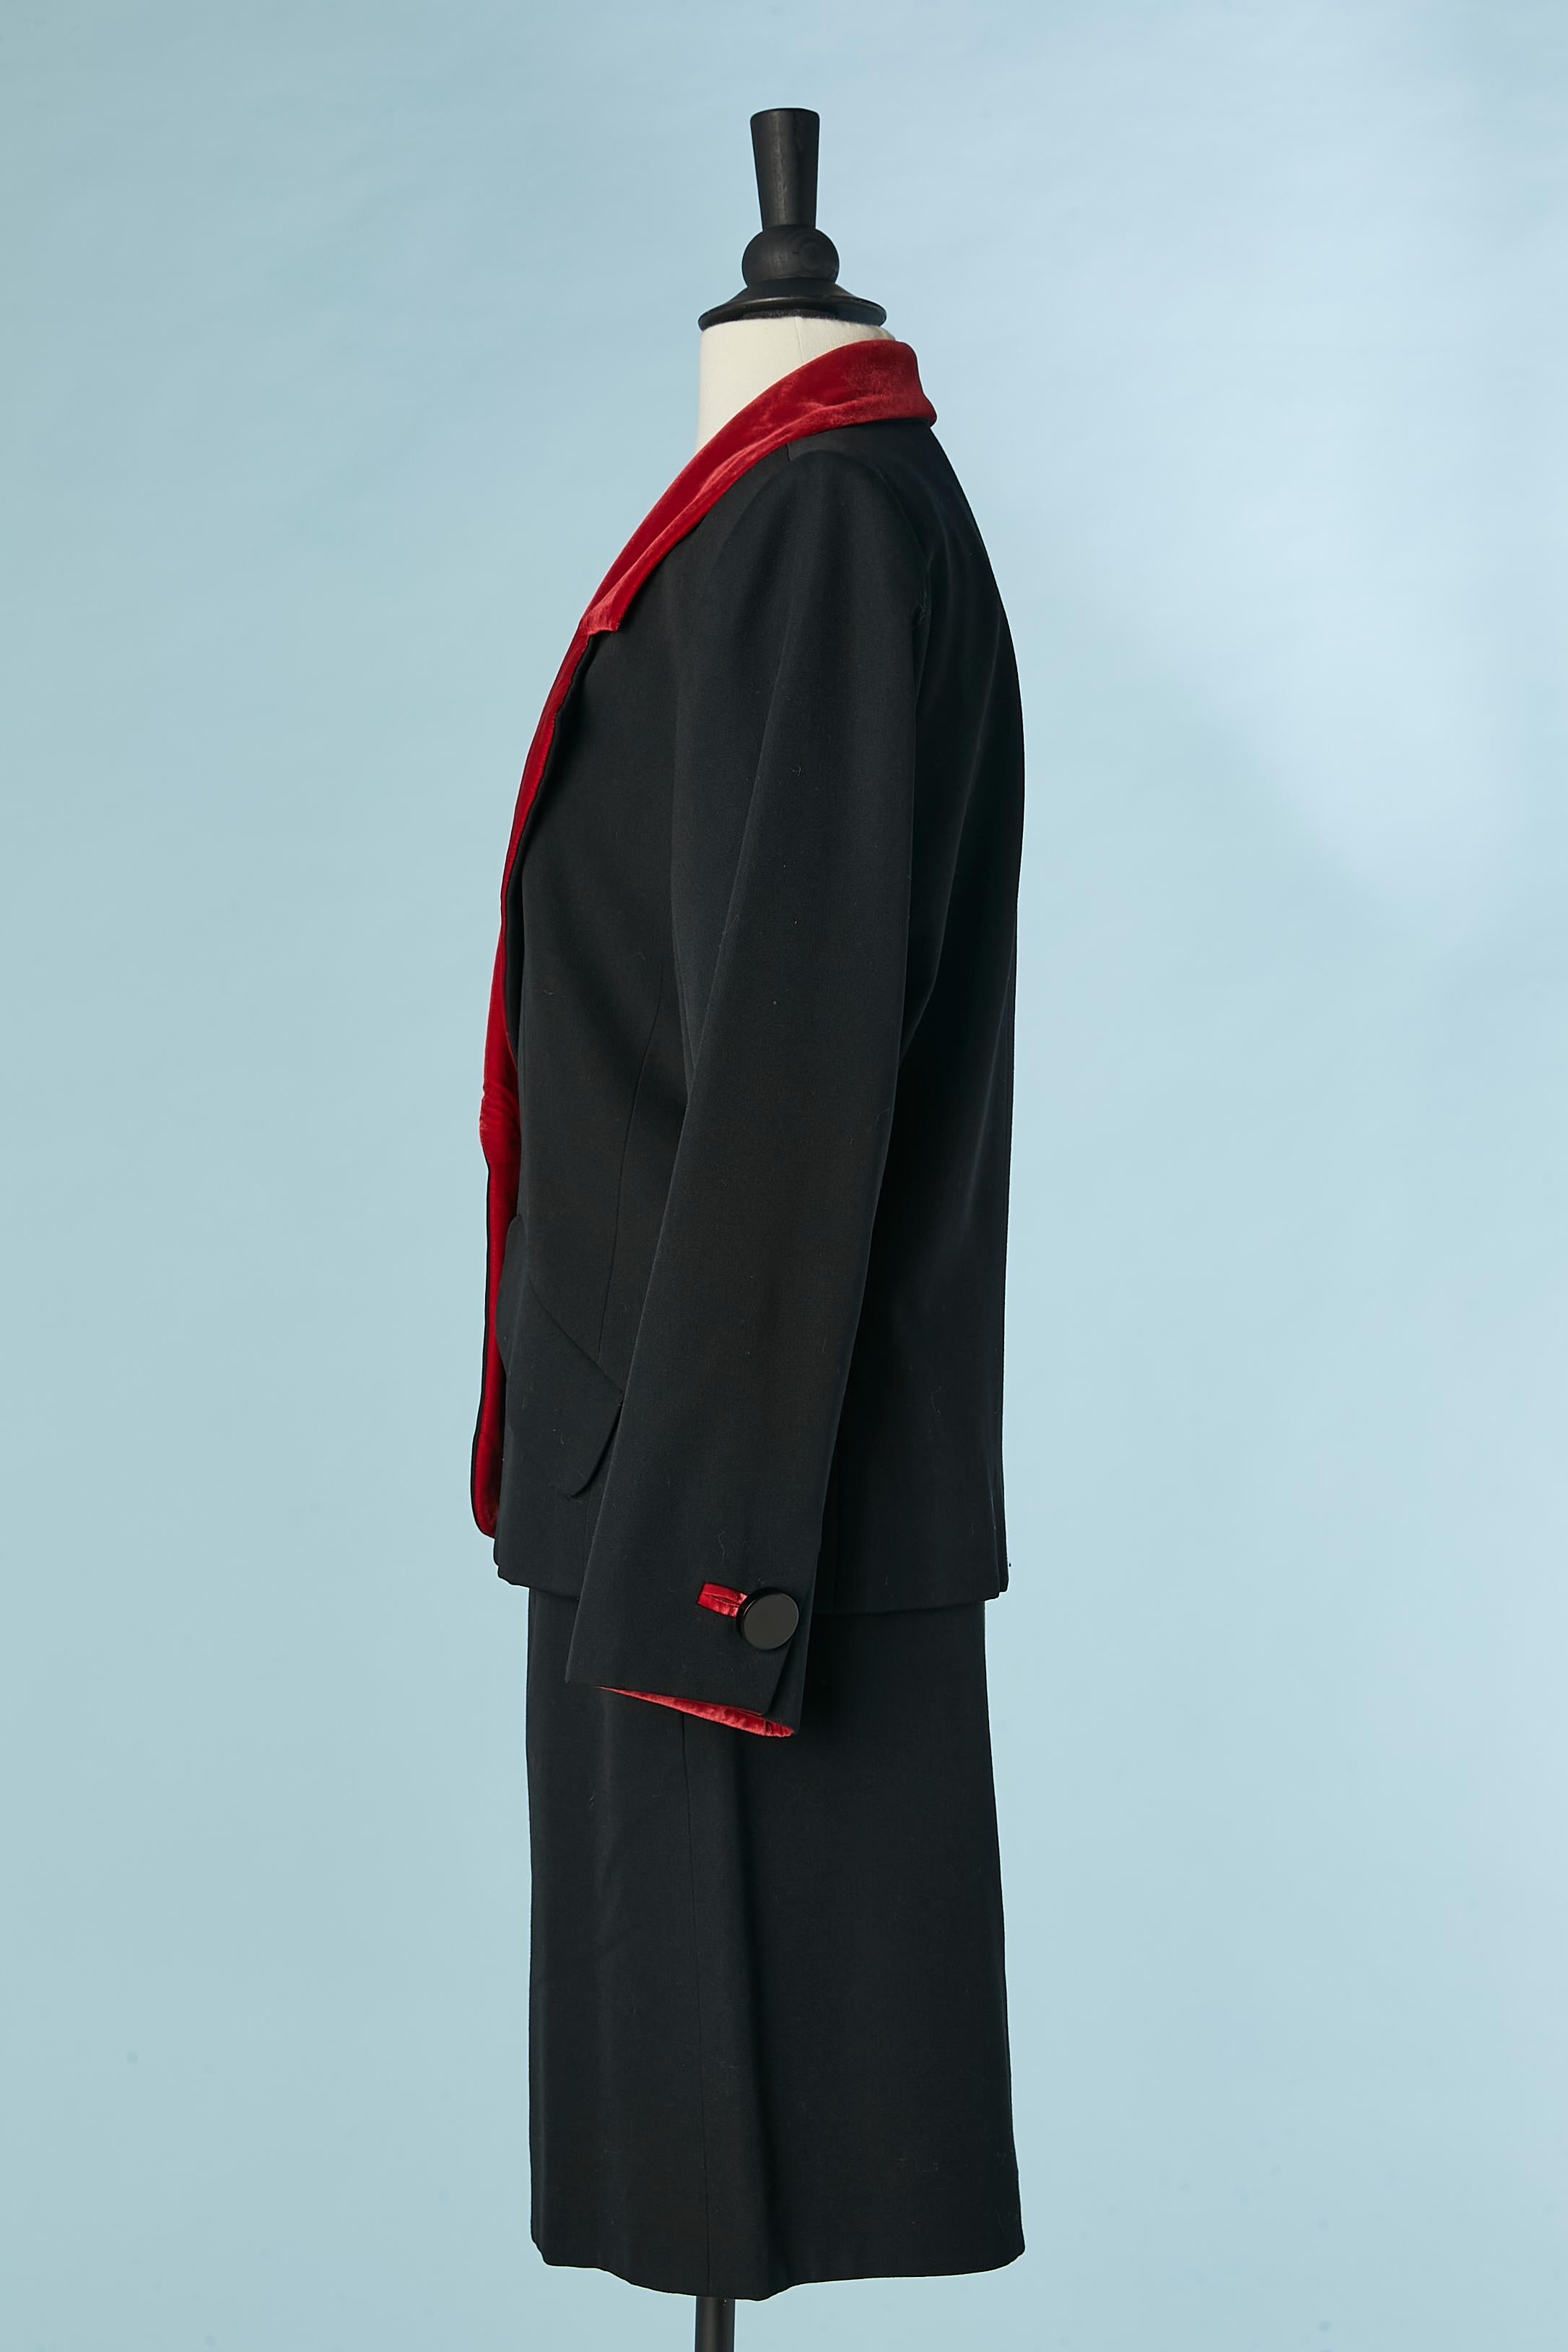 Black skirt-suit with red velvet details Yves Saint Laurent Rive Gauche 1980's  For Sale 2